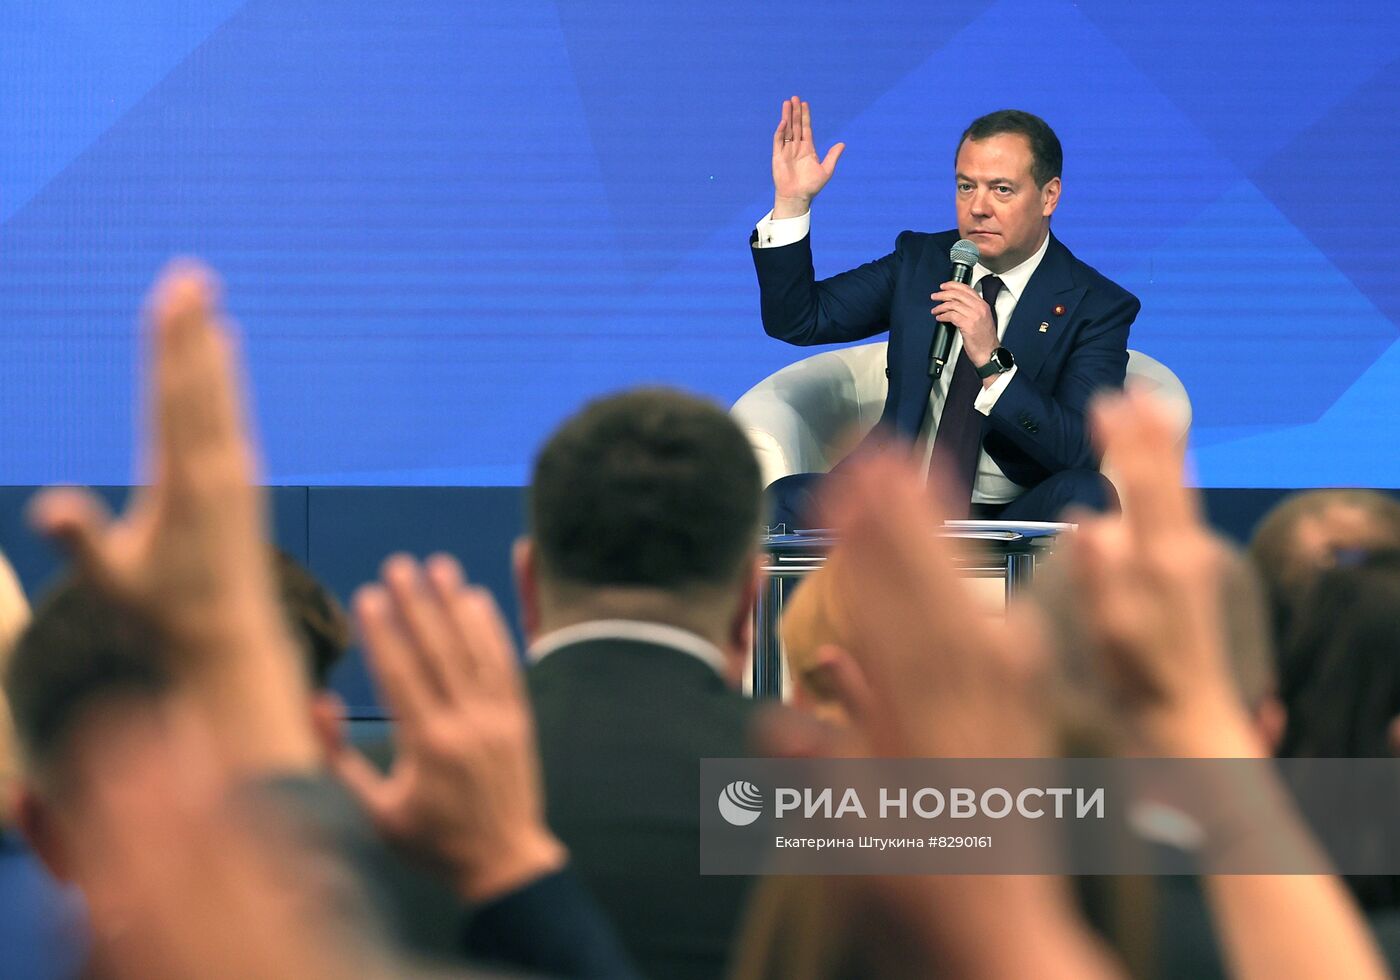 Заседание генерального совета партии "Единая Россия"